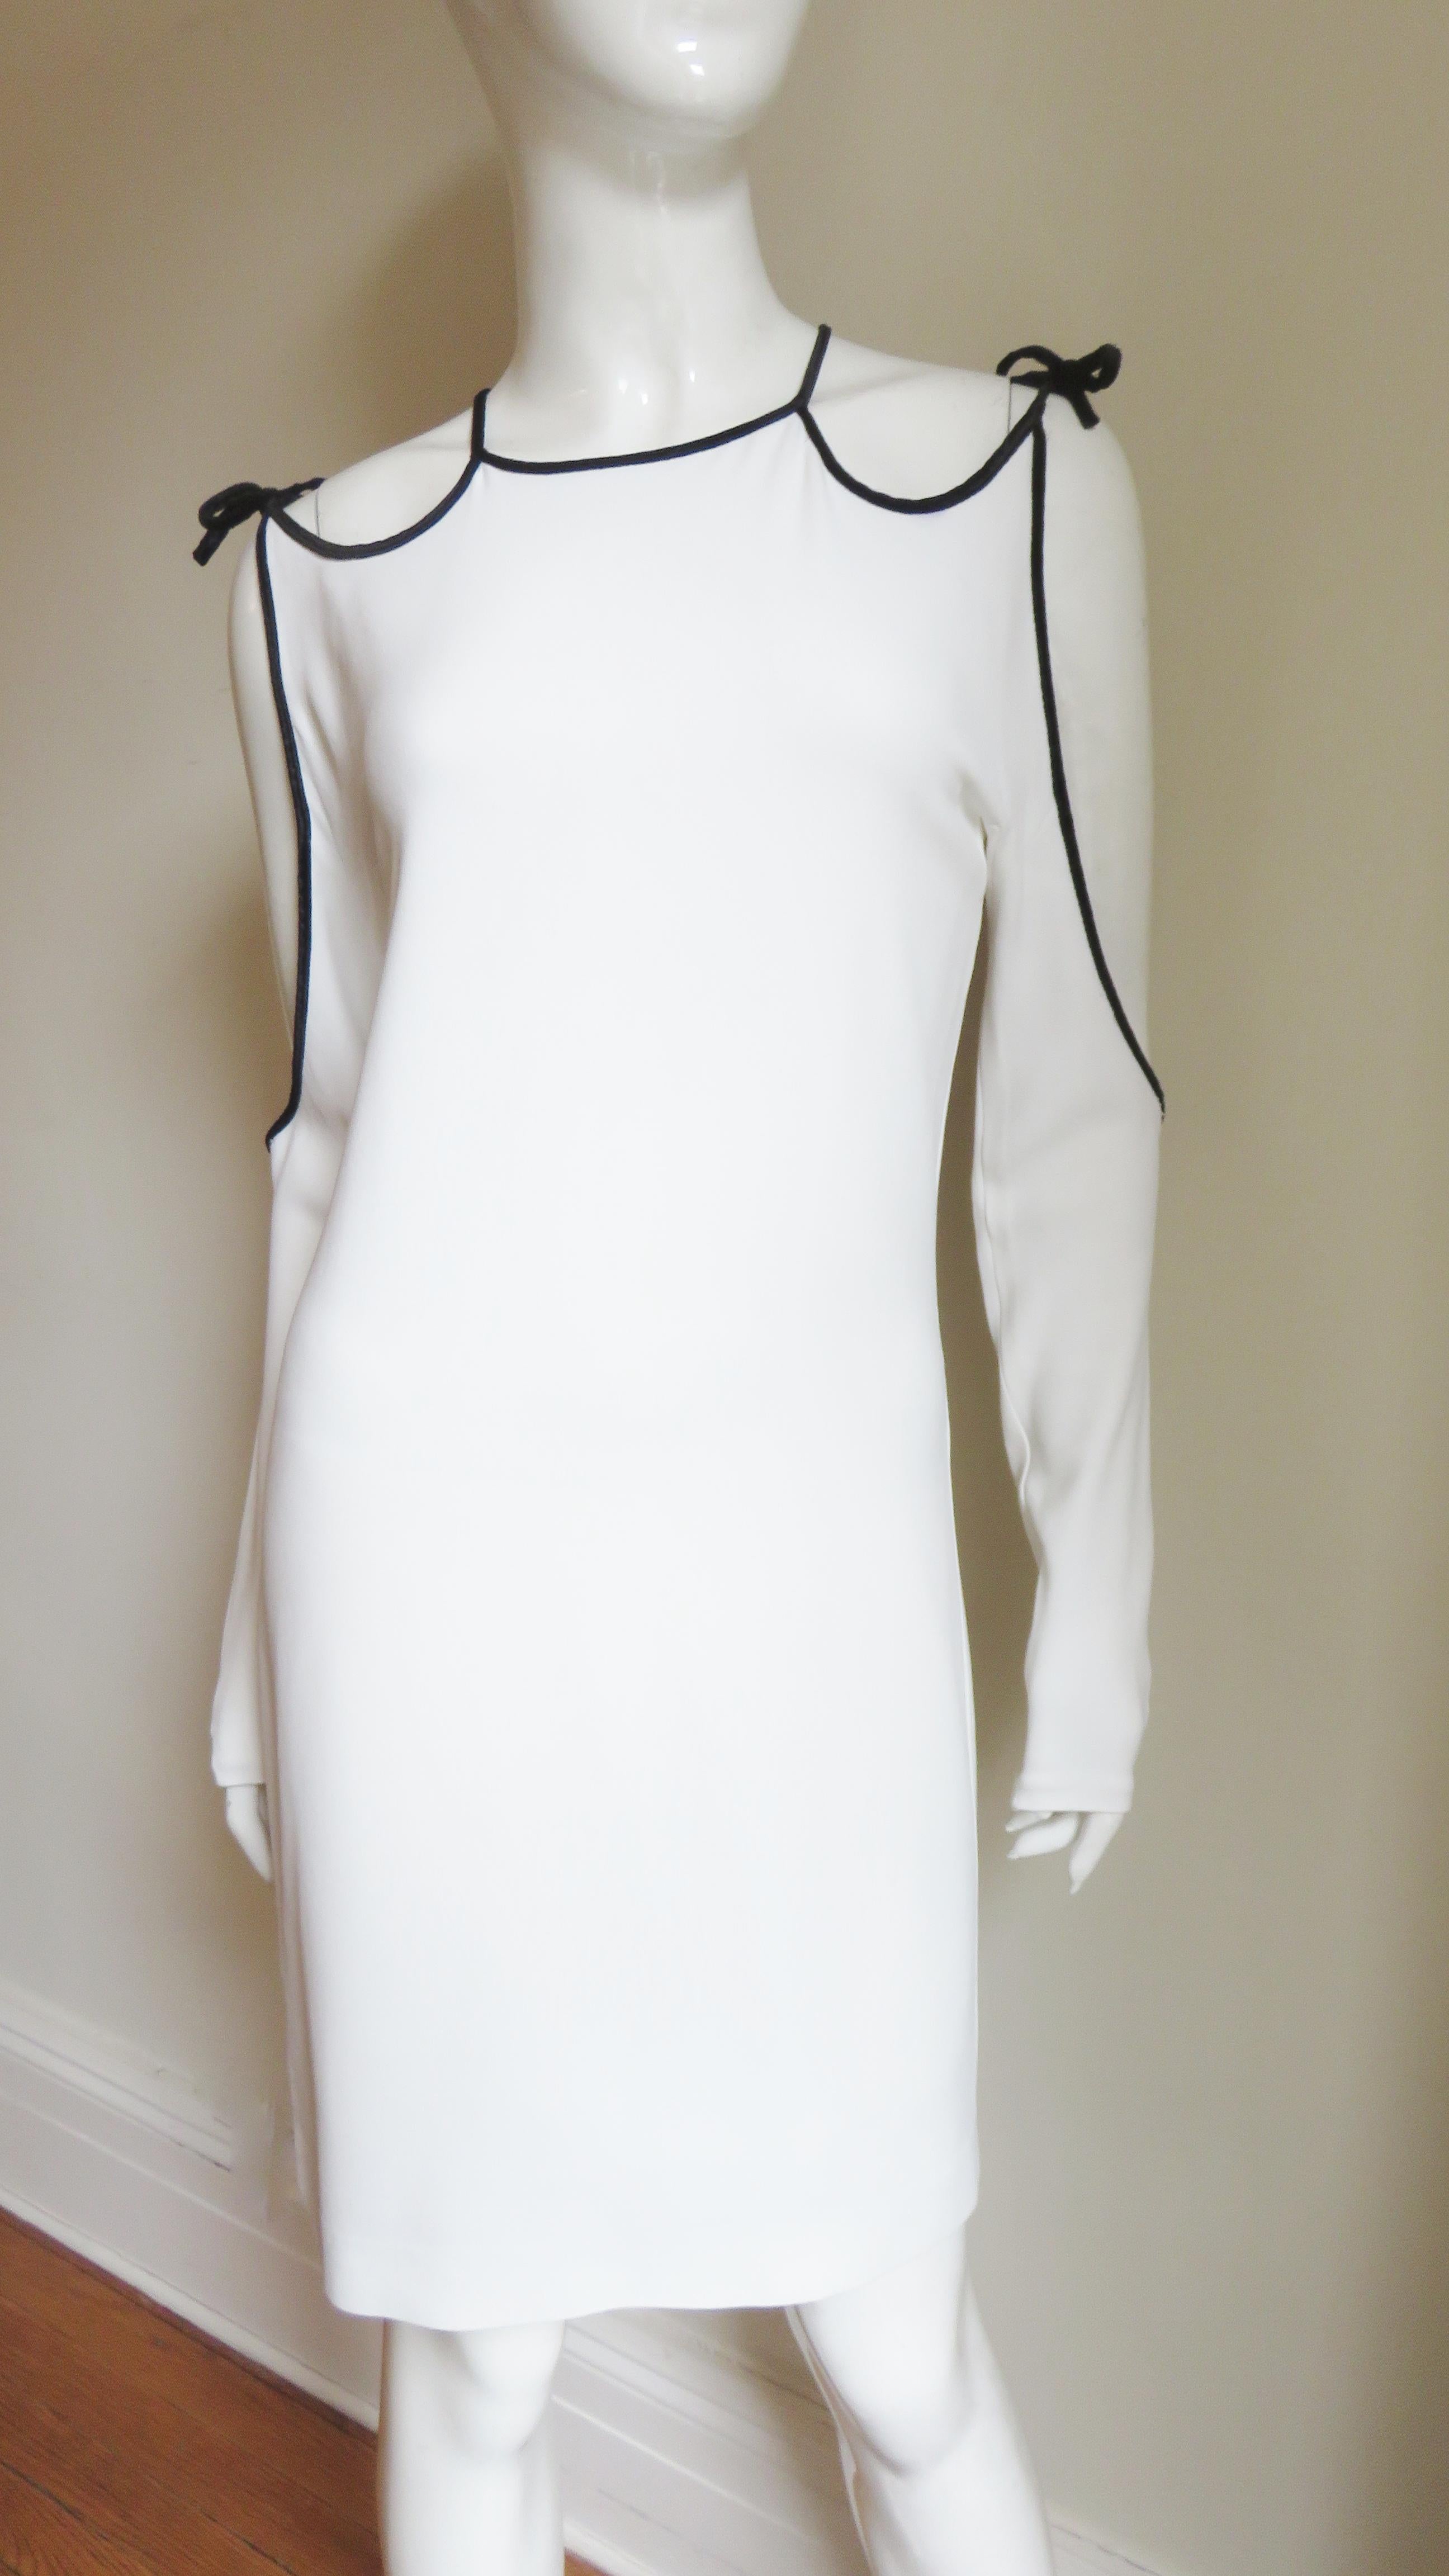 Une fabuleuse robe en jersey blanc de Tom Ford.  Il présente des découpes au niveau des épaules, des manches et du dos, toutes soulignées par un passepoil de velours noir qui se noue au niveau des épaules.  La robe est semi-fixe puis tombe droit